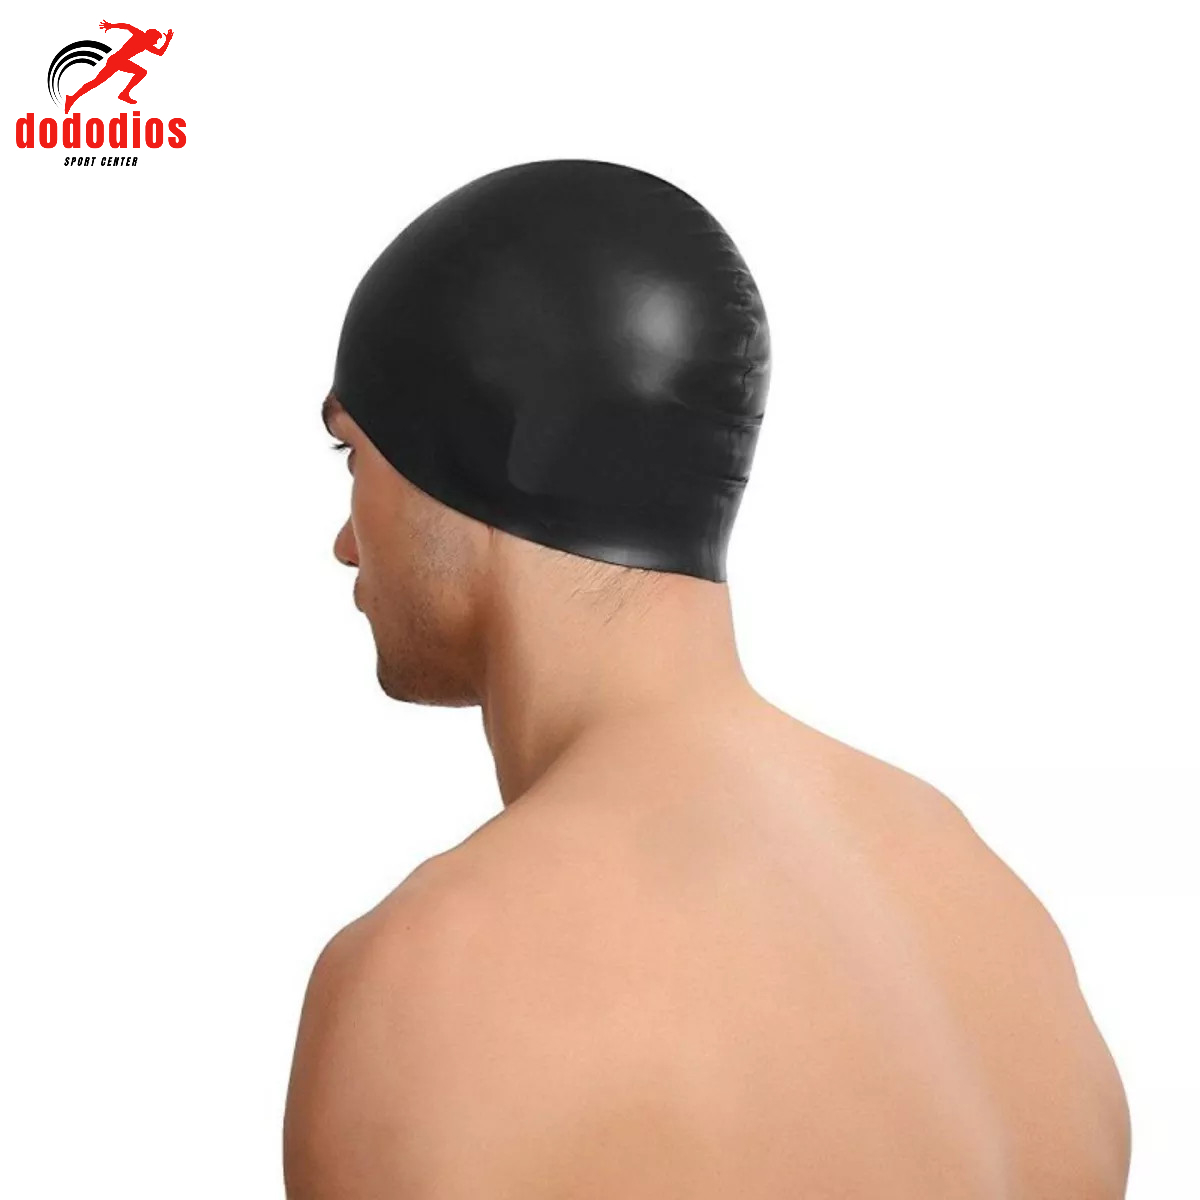 Nón bơi mũ bơi trơn silicone chống thống nước cao cấp CA31 dododios Collection - Hàng Chính hãng dododios